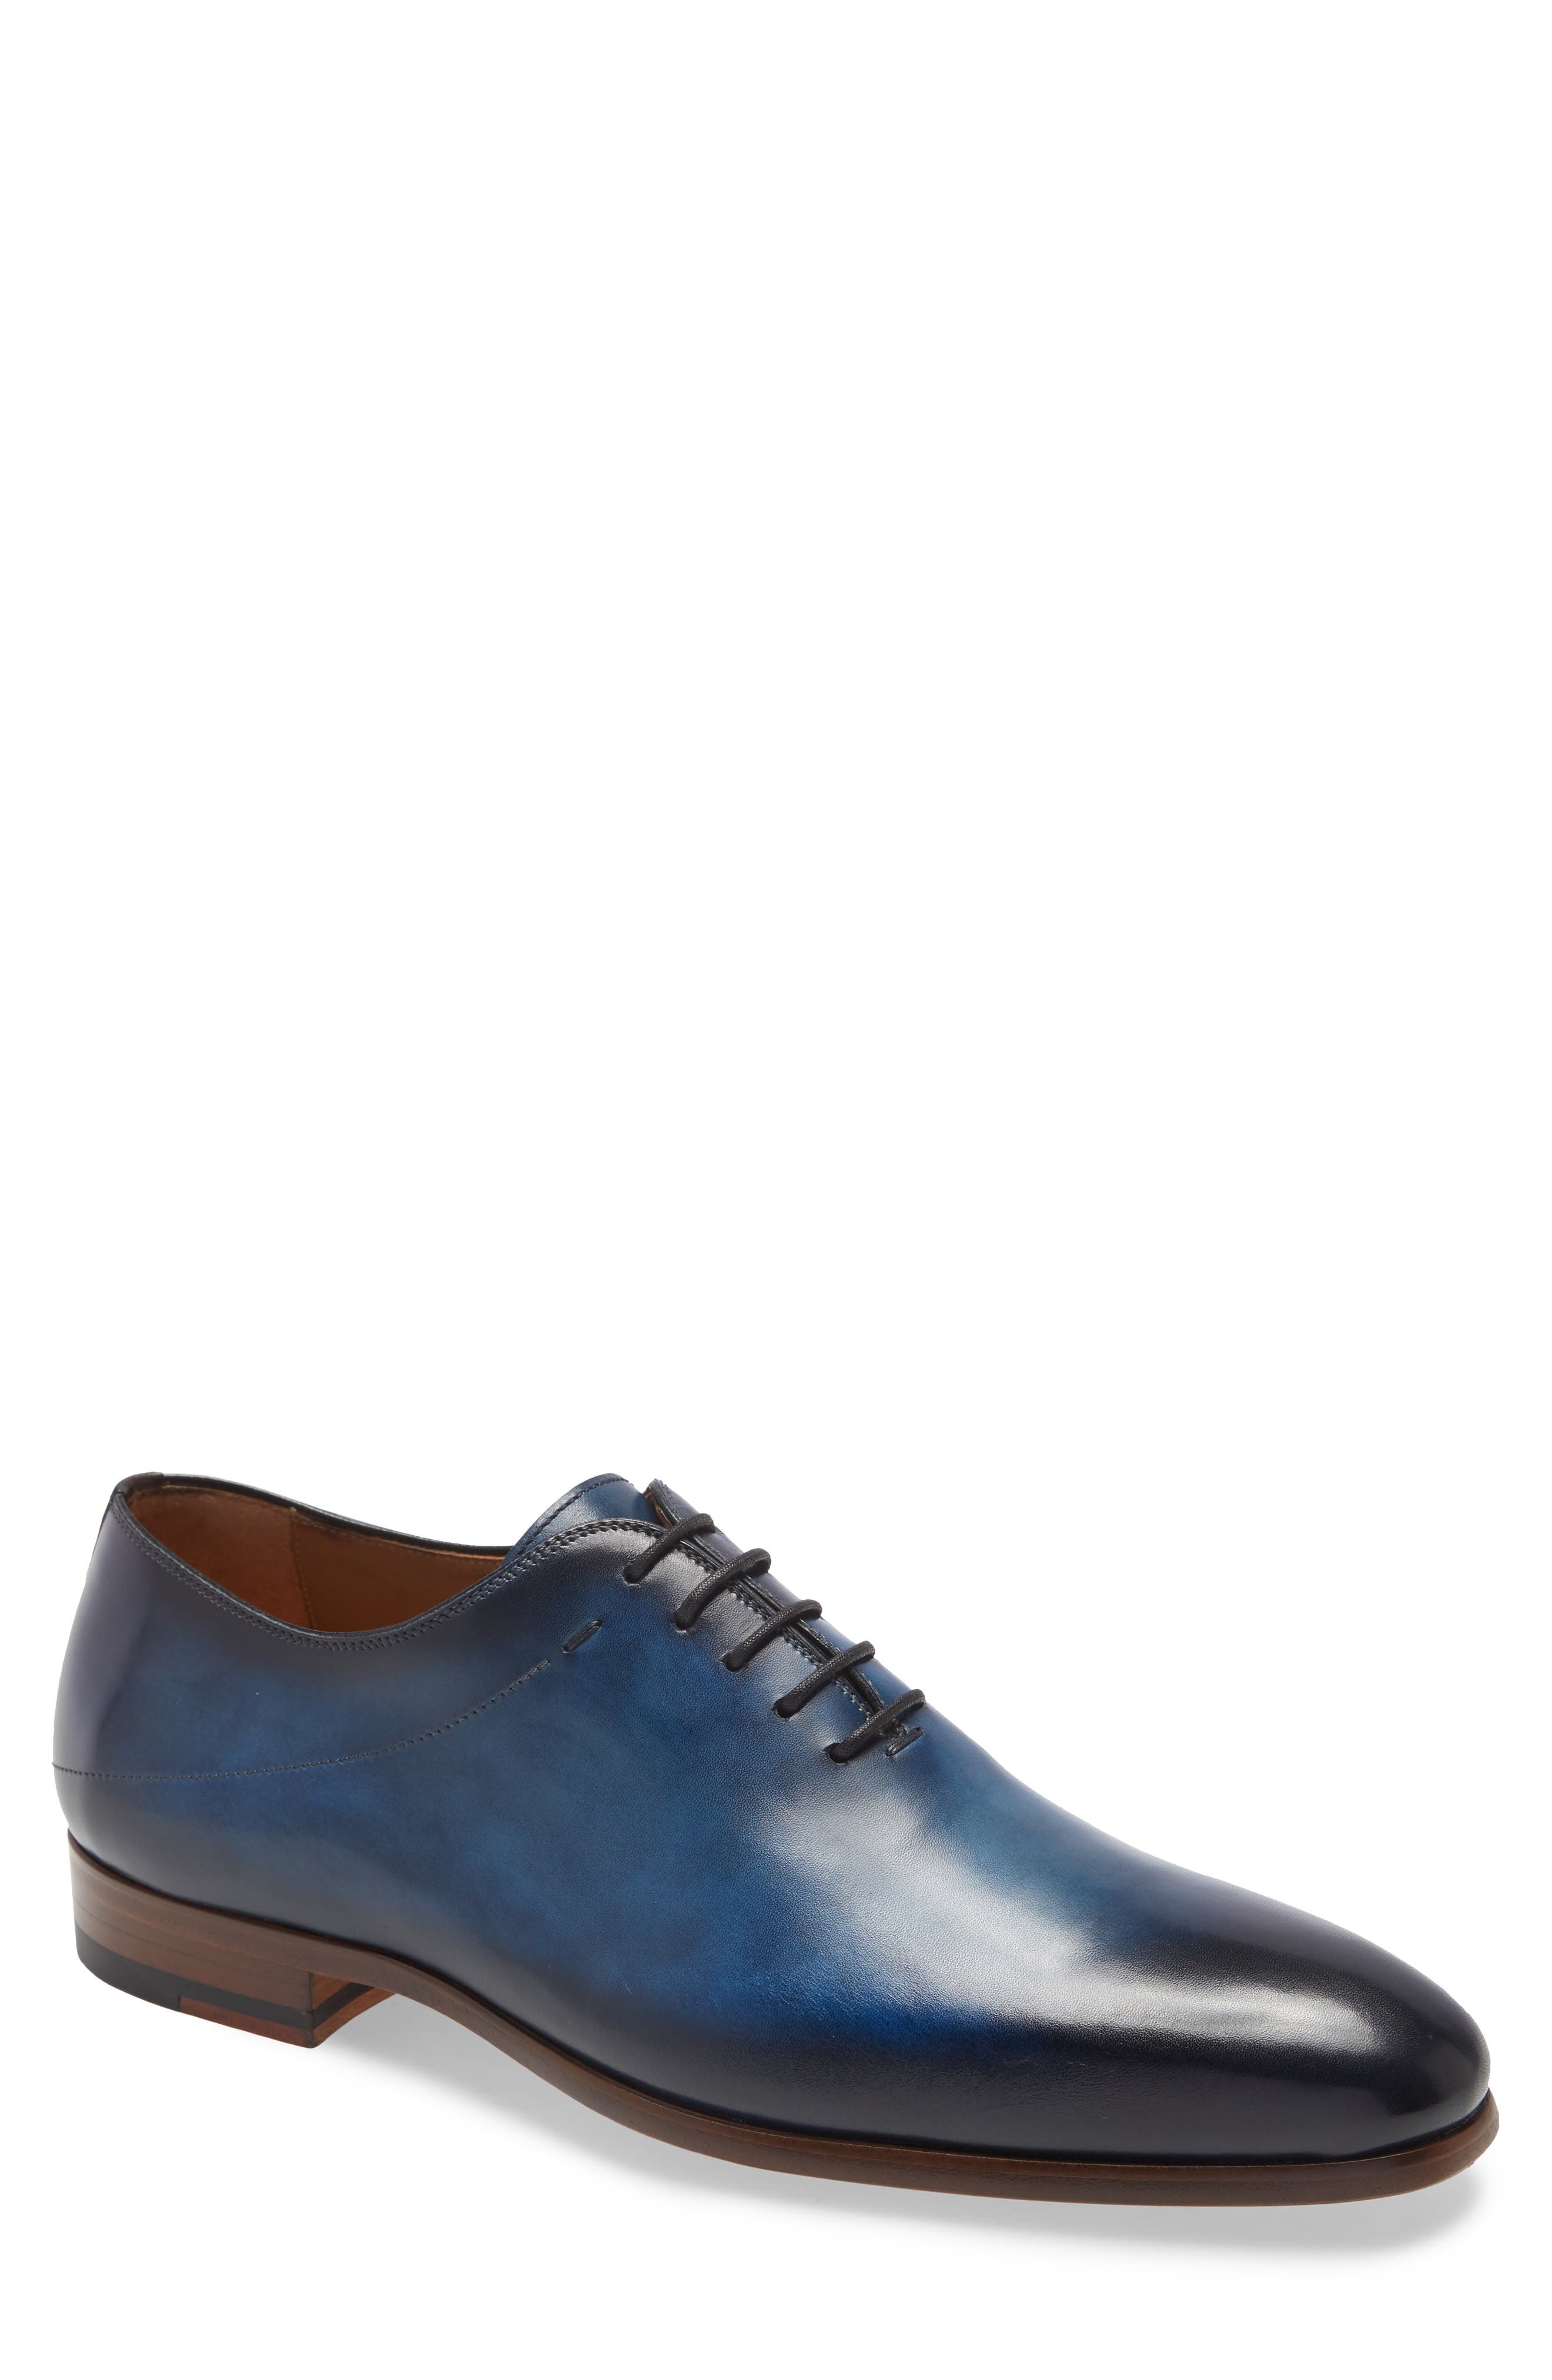 blue magnanni shoes